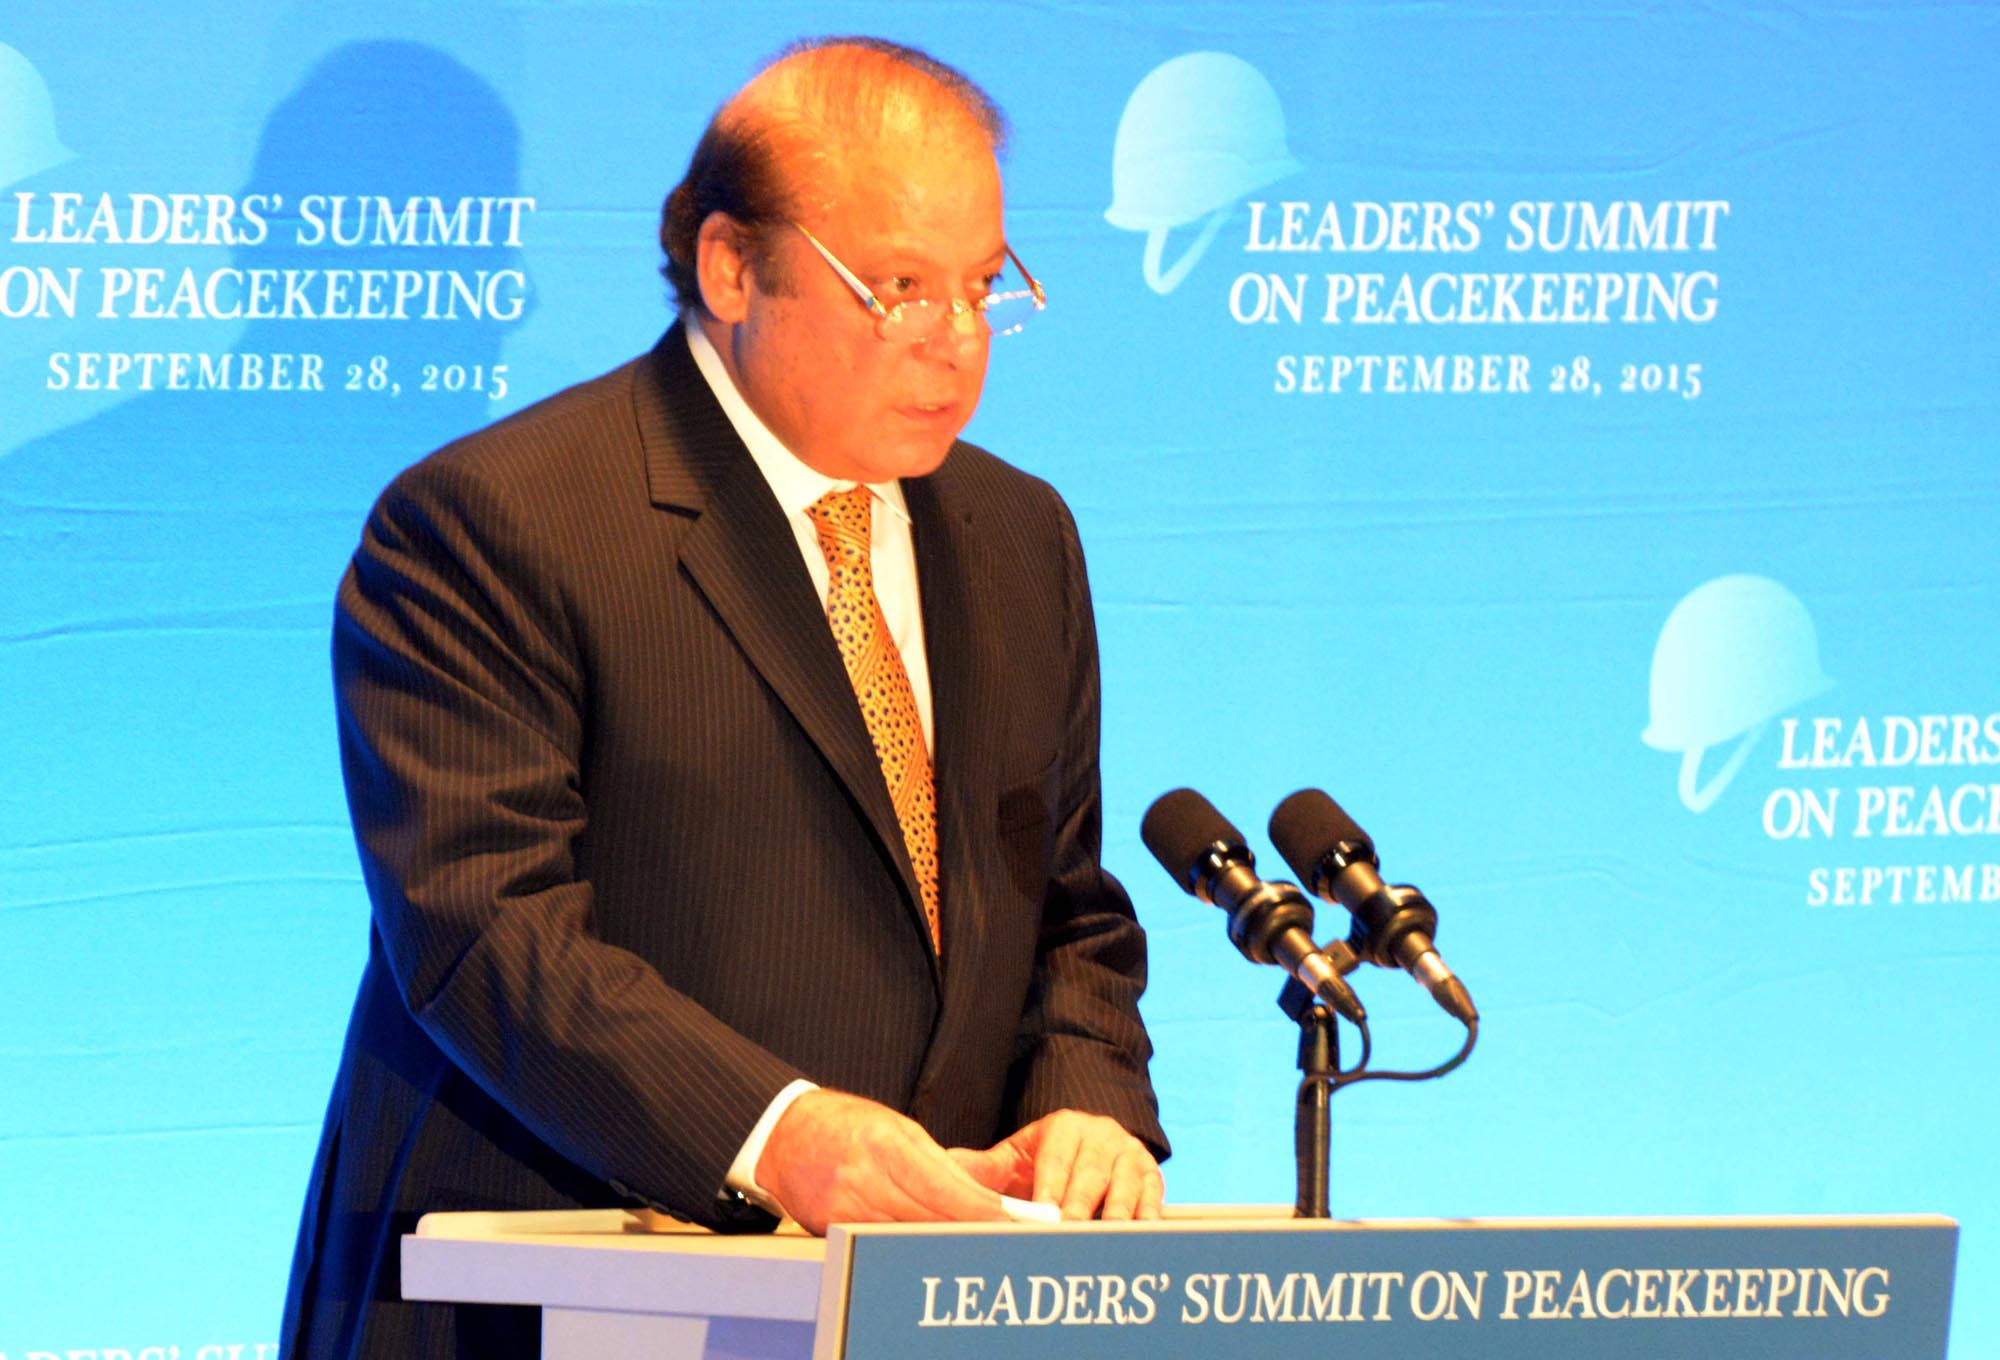 Pakistan pledges to support UN peacekeeping efforts in war zones